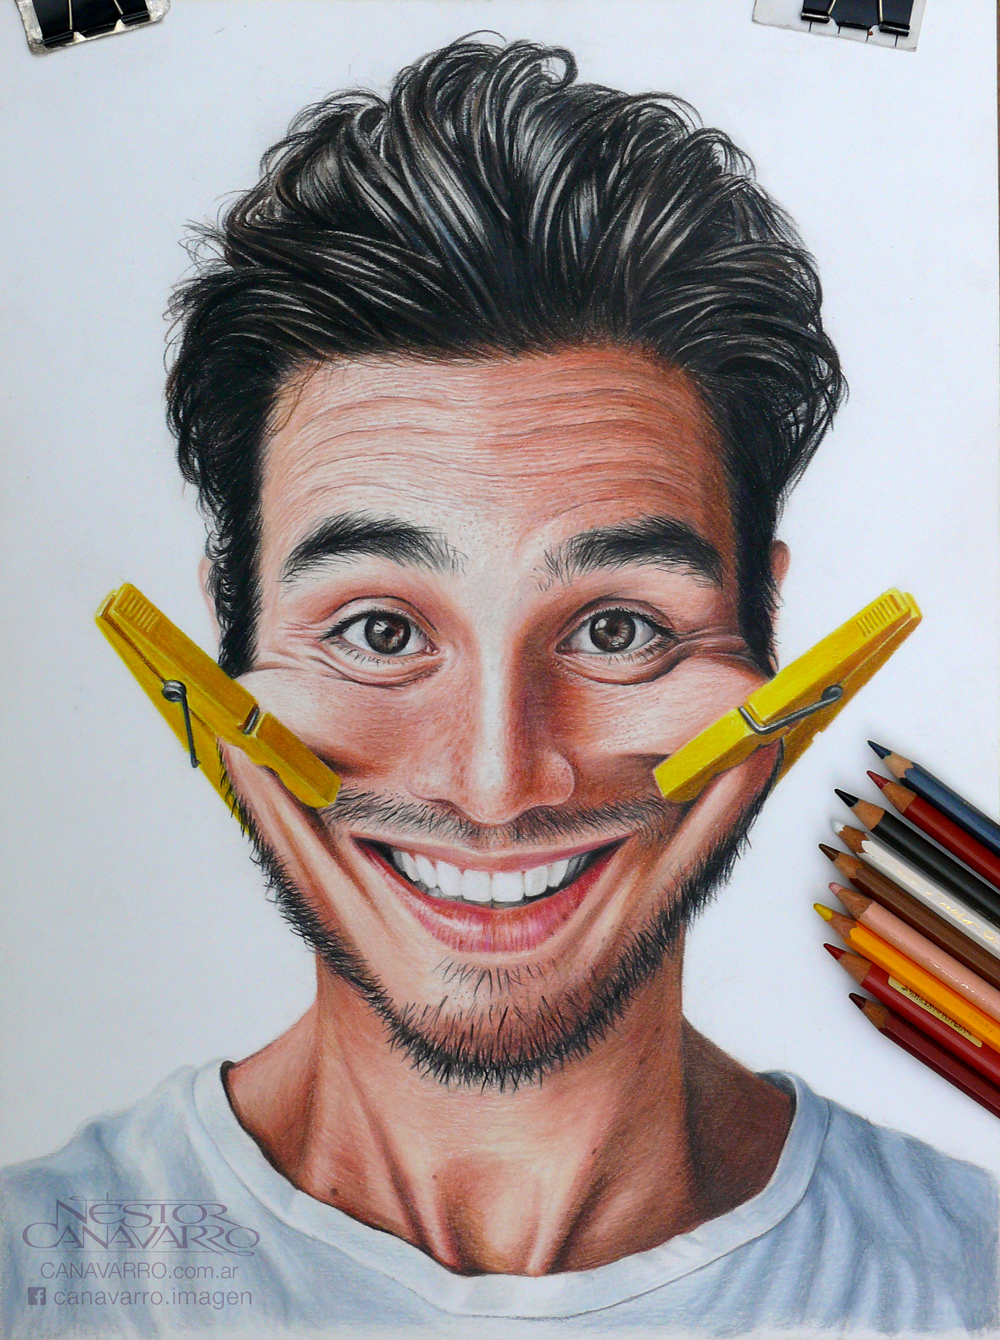 Colour Pencils For Portraits